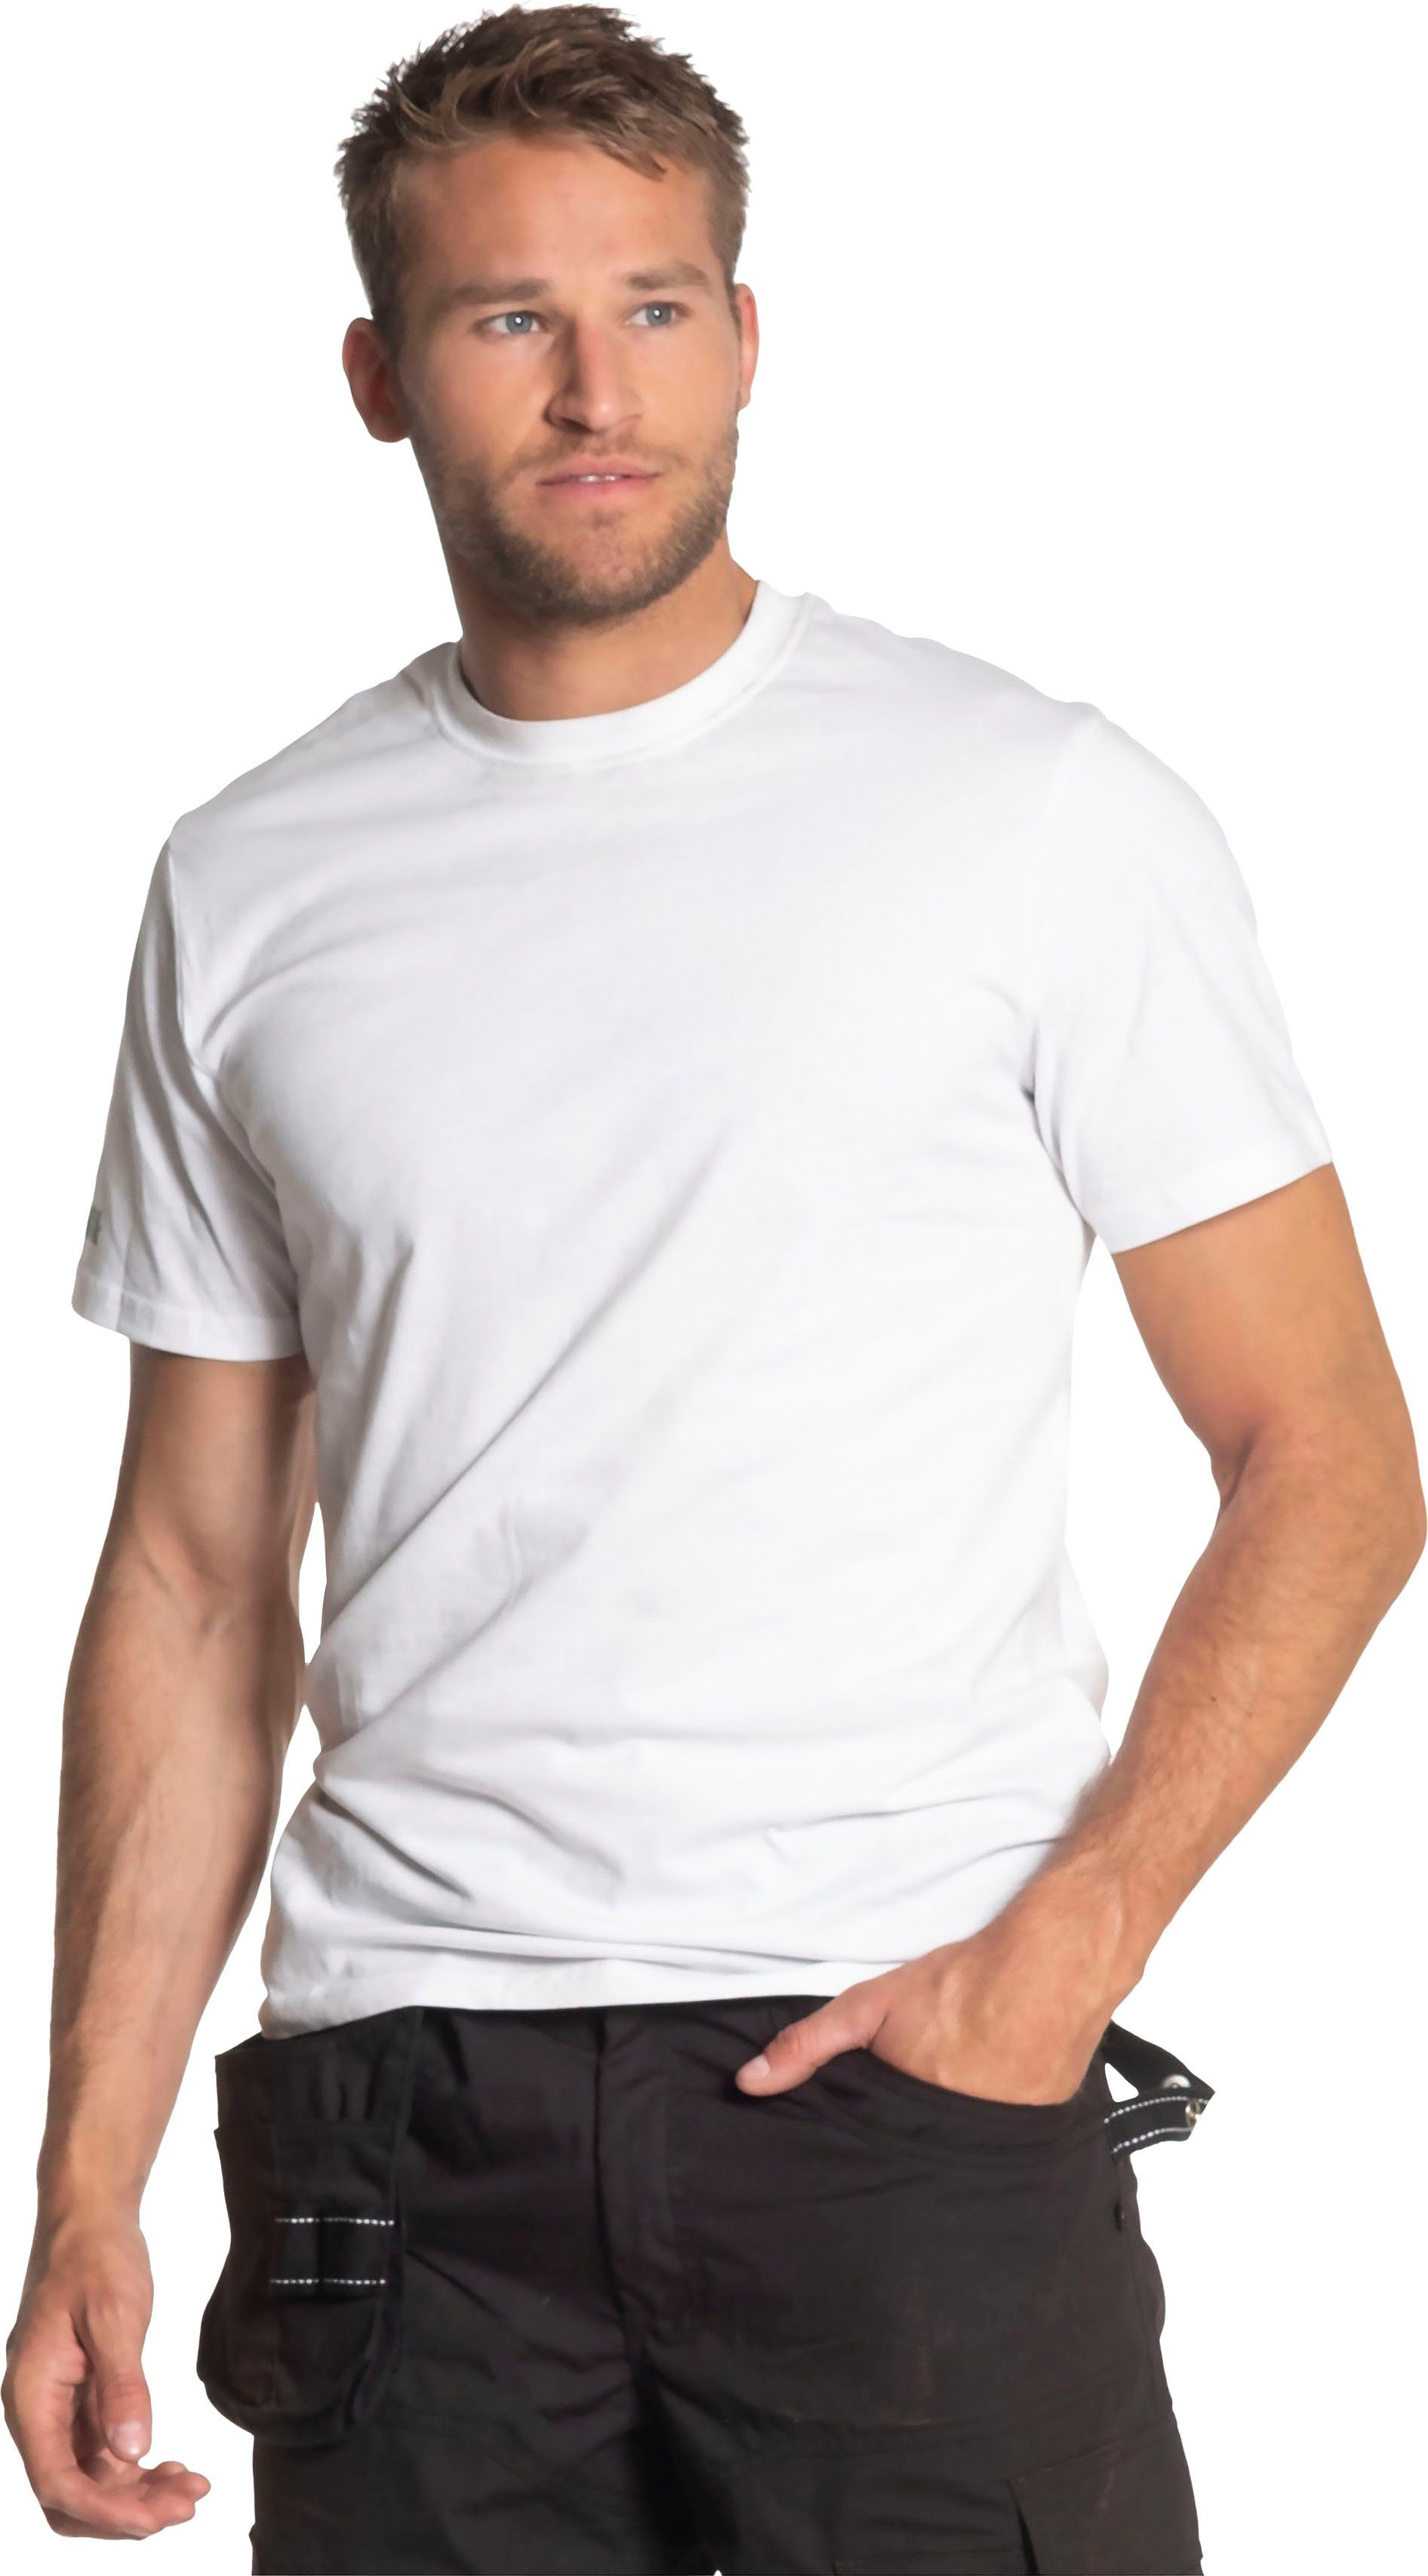 T-Shirt T-Shirt Herock®-Aufdruck, kurze Herock Rundhalsausschnitt, weiß Ärmel, Rippstrickkragen kurze Callius Ärmel